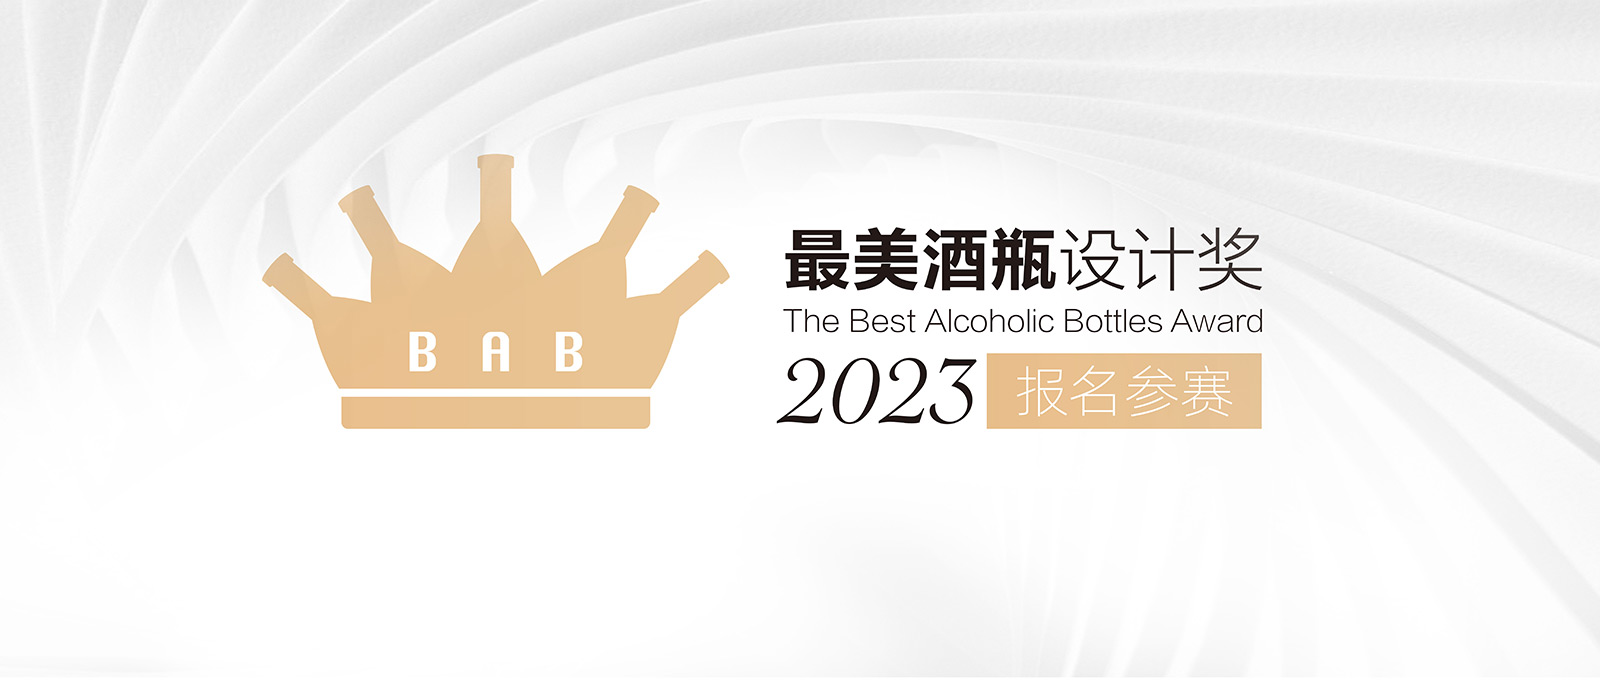 2023最美酒瓶设计大赛